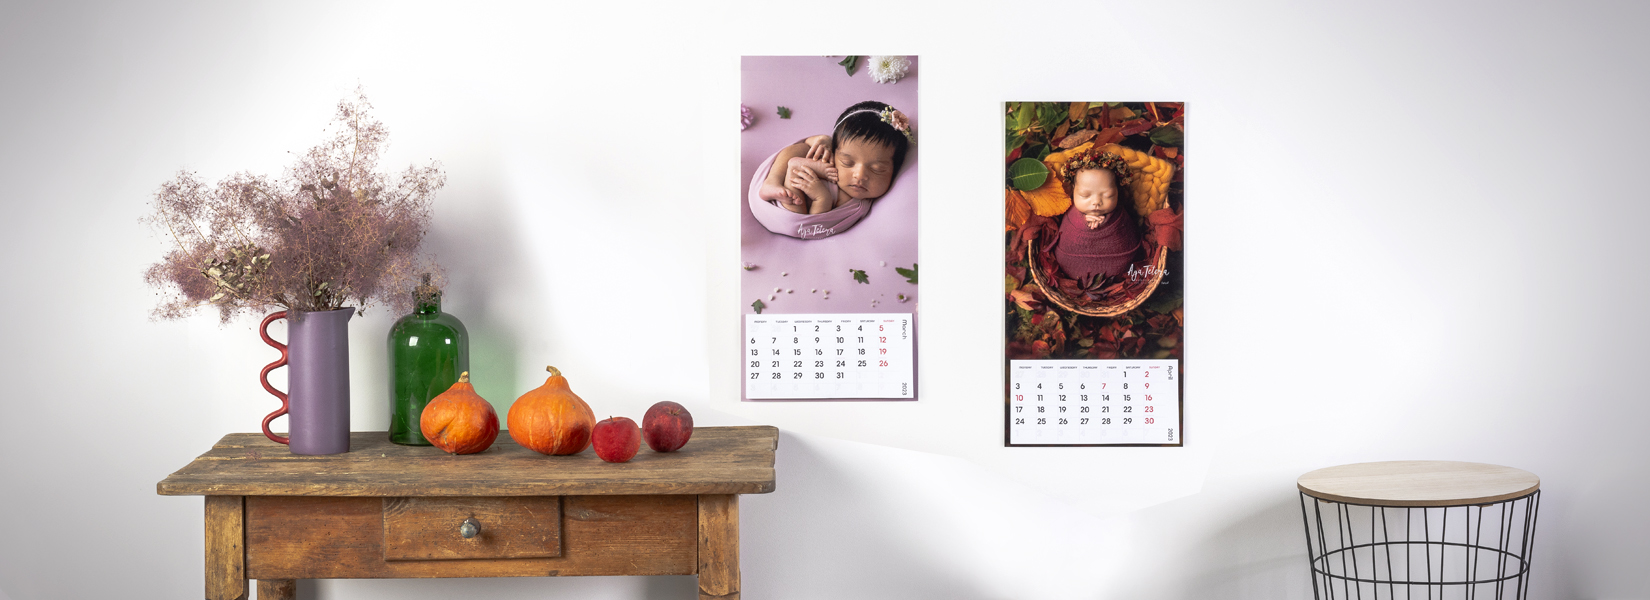 Fotokalender im Großformat in HD - Einseitig mit Kalenderblock